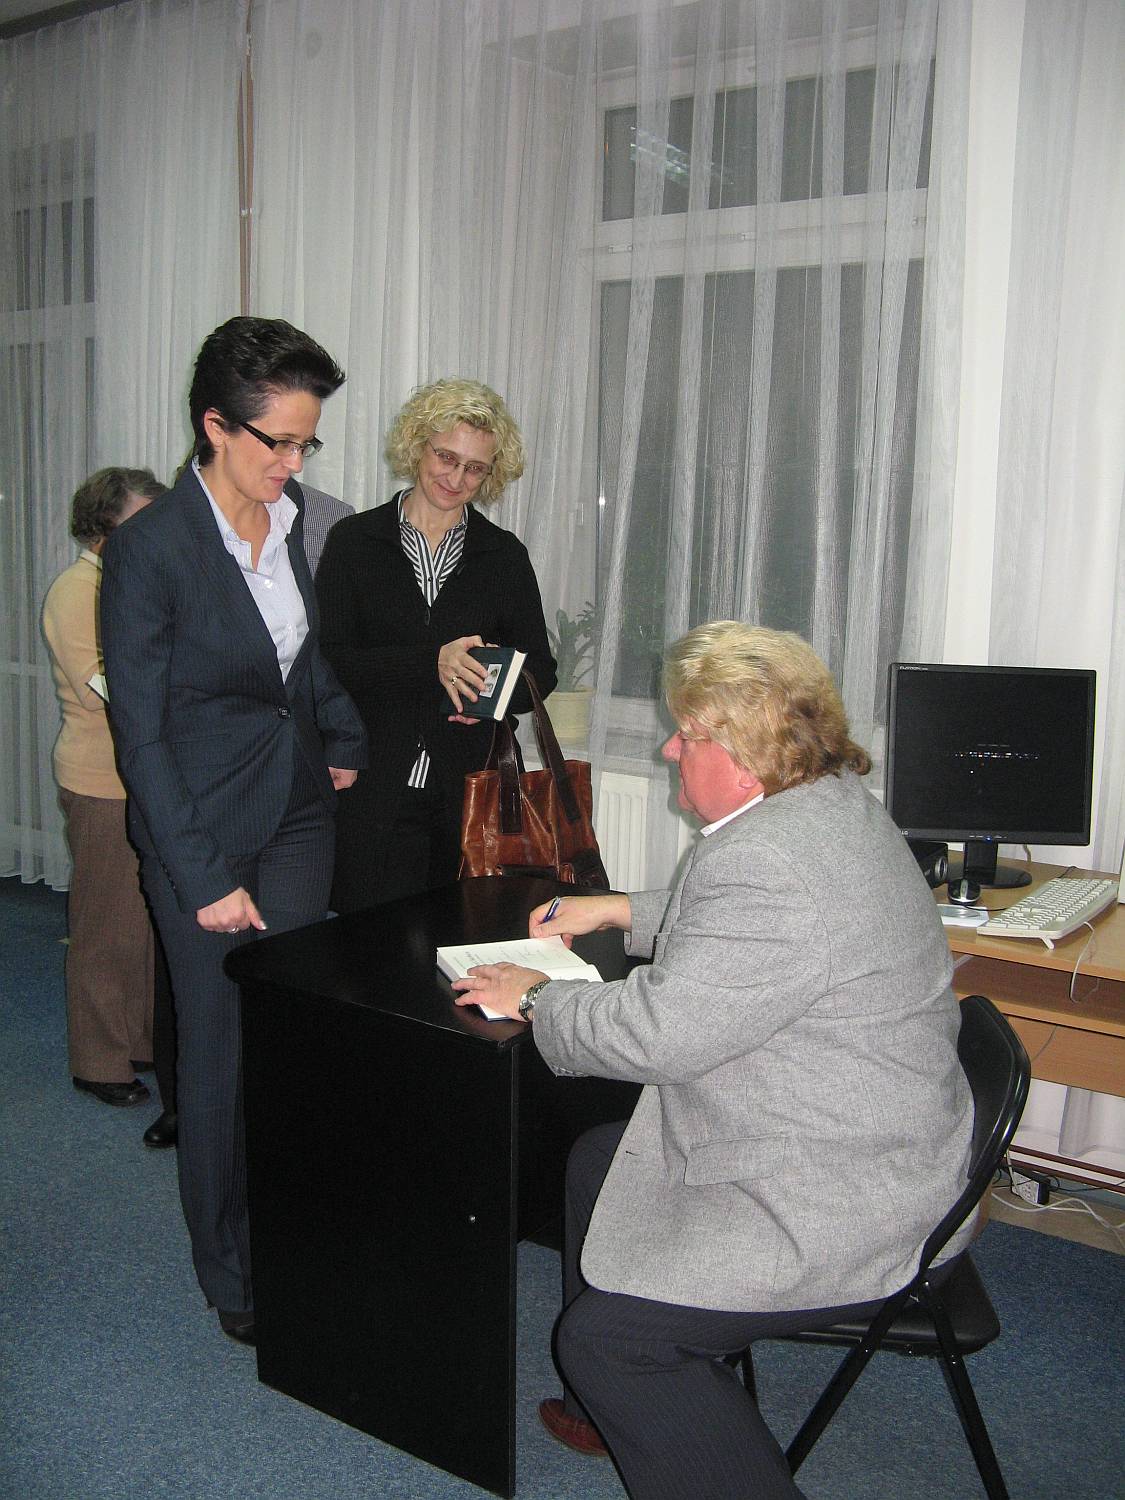 Spotkanie byo okazj do nabycia ksiki i otrzymania od Autora autografu, 24.11.2011 r.